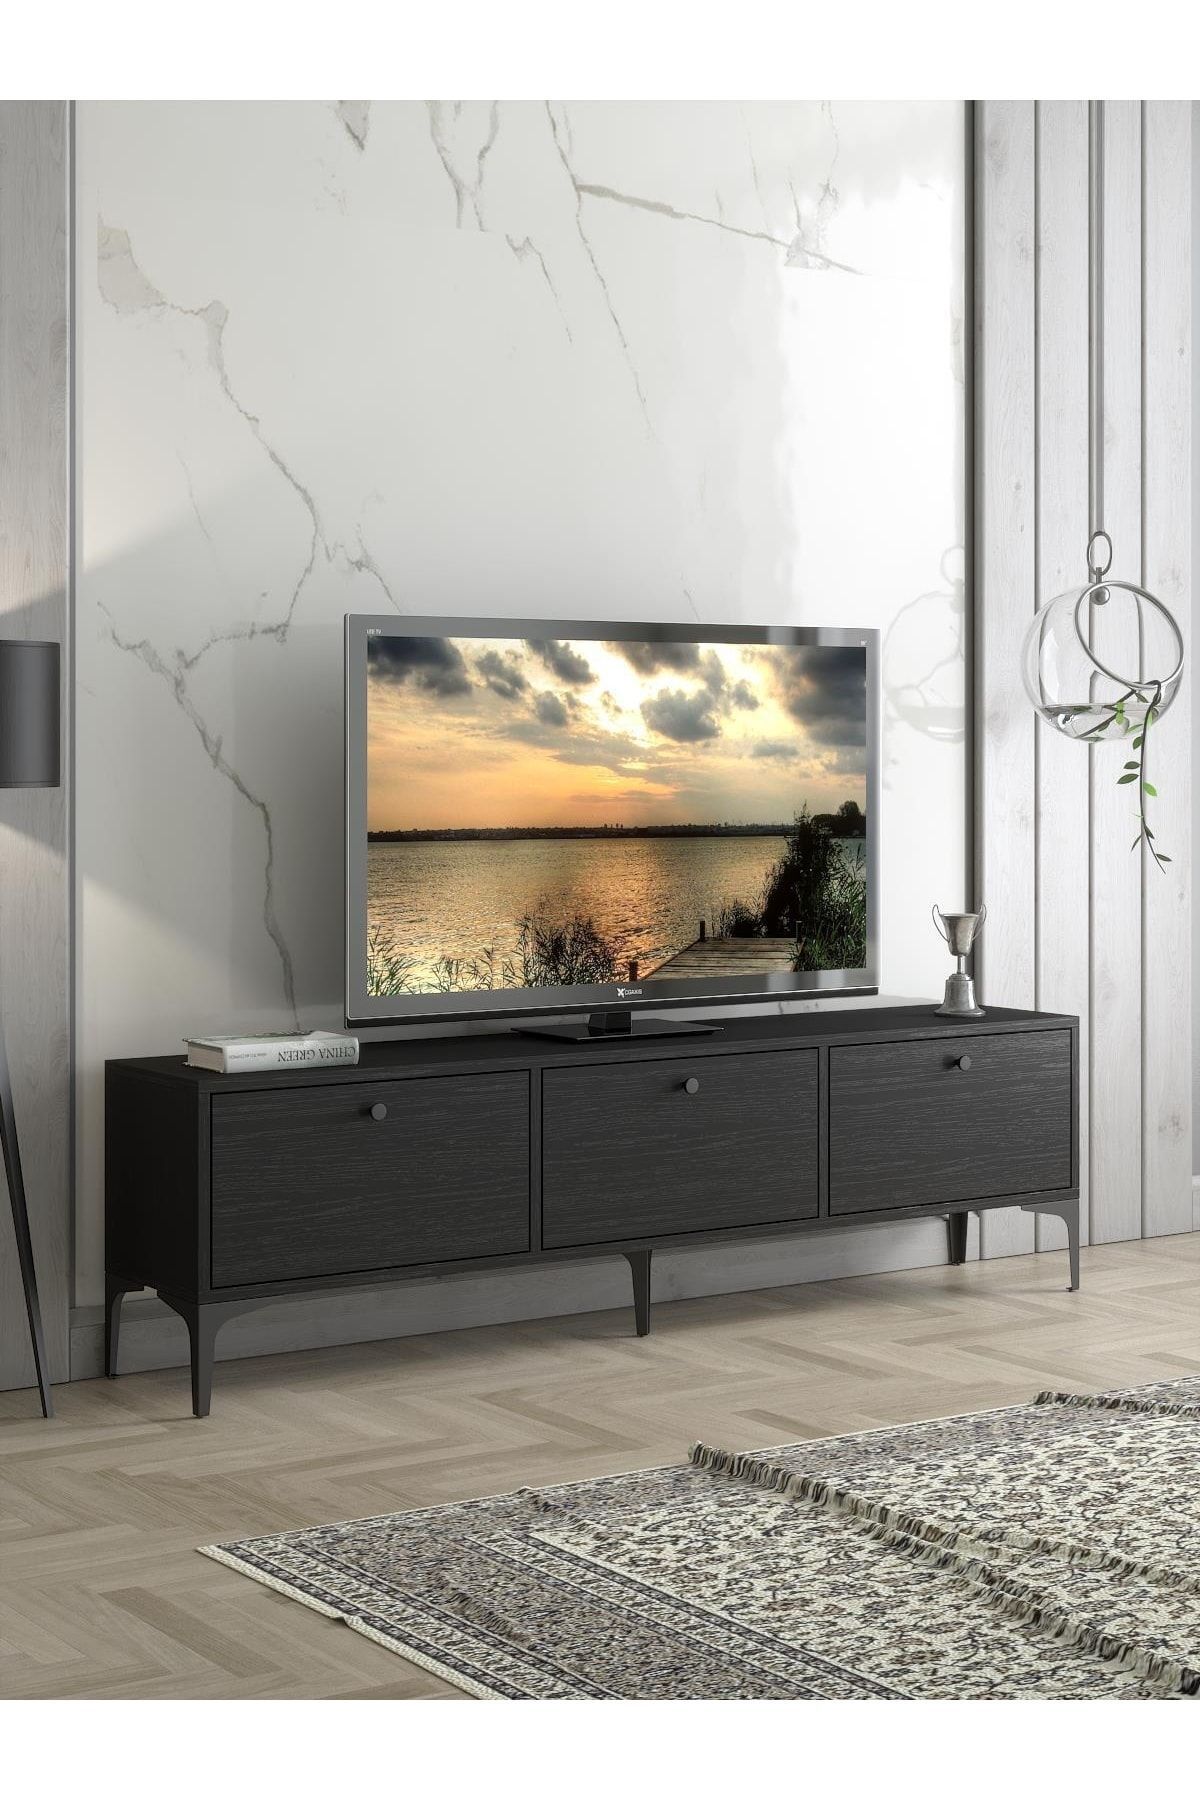 Wood'n Love Etna Premium Bakır Metal Ayaklı Dolaplı 160 Cm Tv Ünitesi - Wood Siyah / Siyah